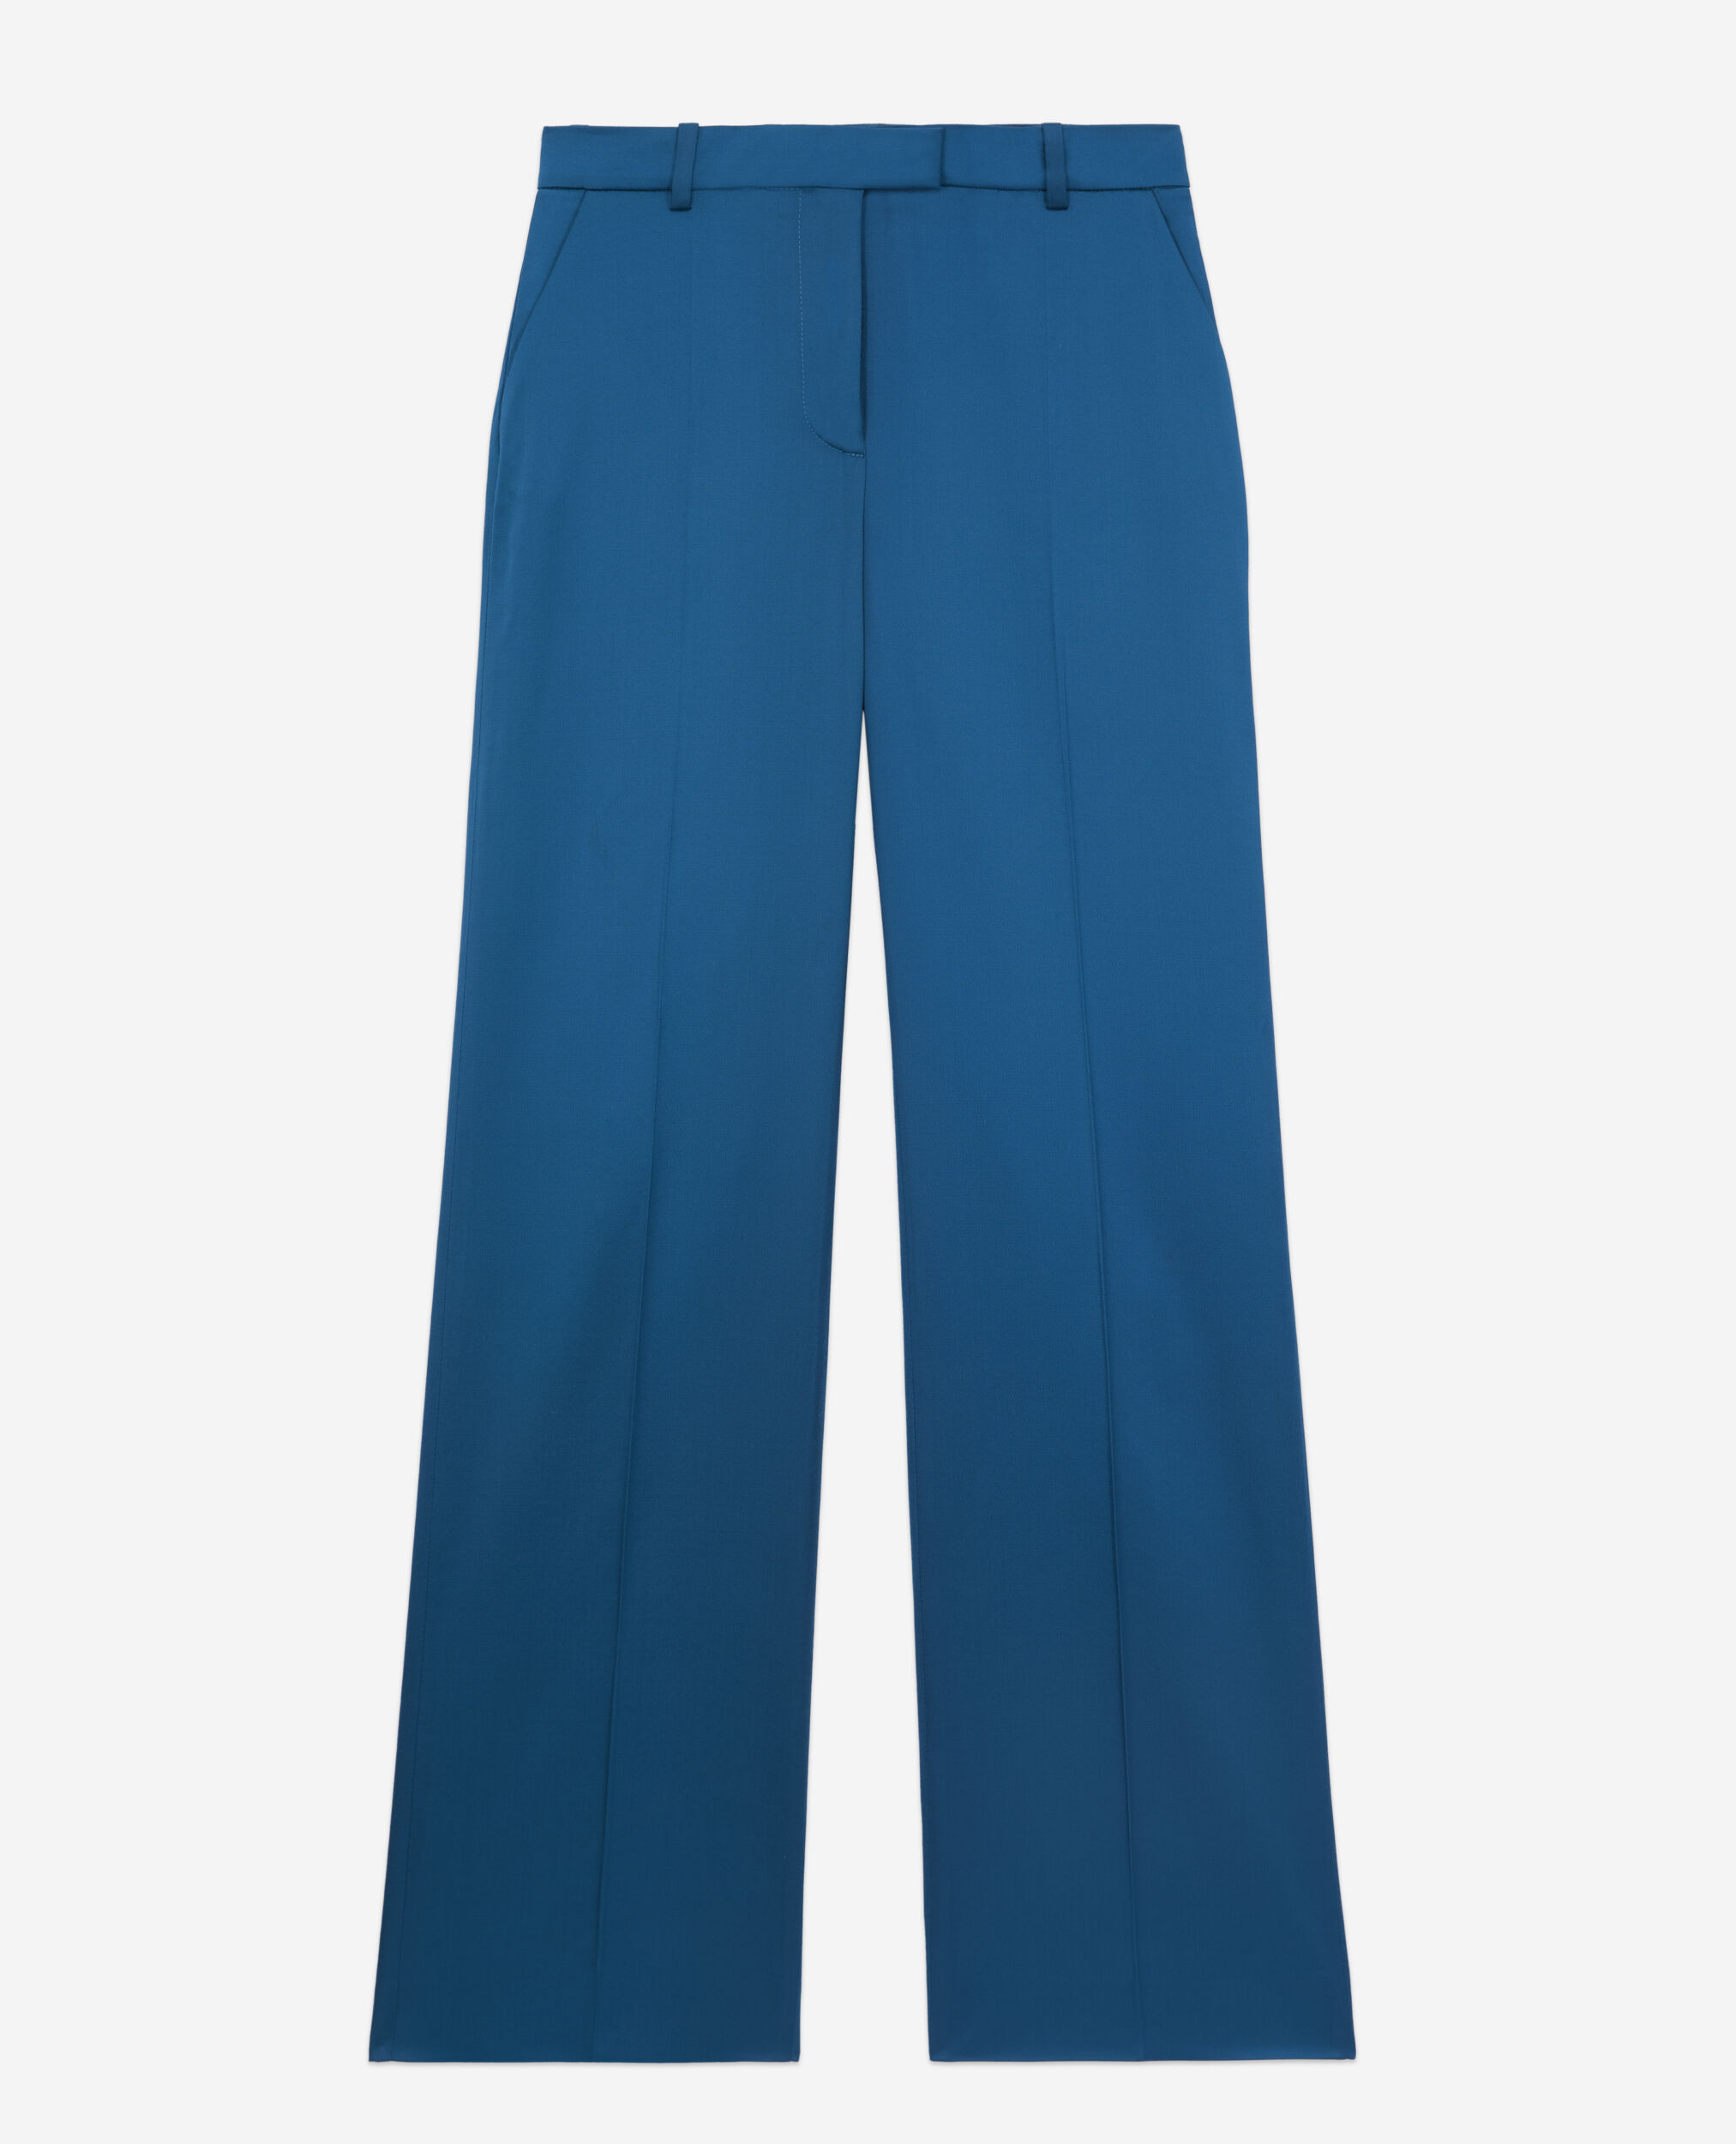 Pantalon tailleur bleu satiné, DEEP BLUE, hi-res image number null